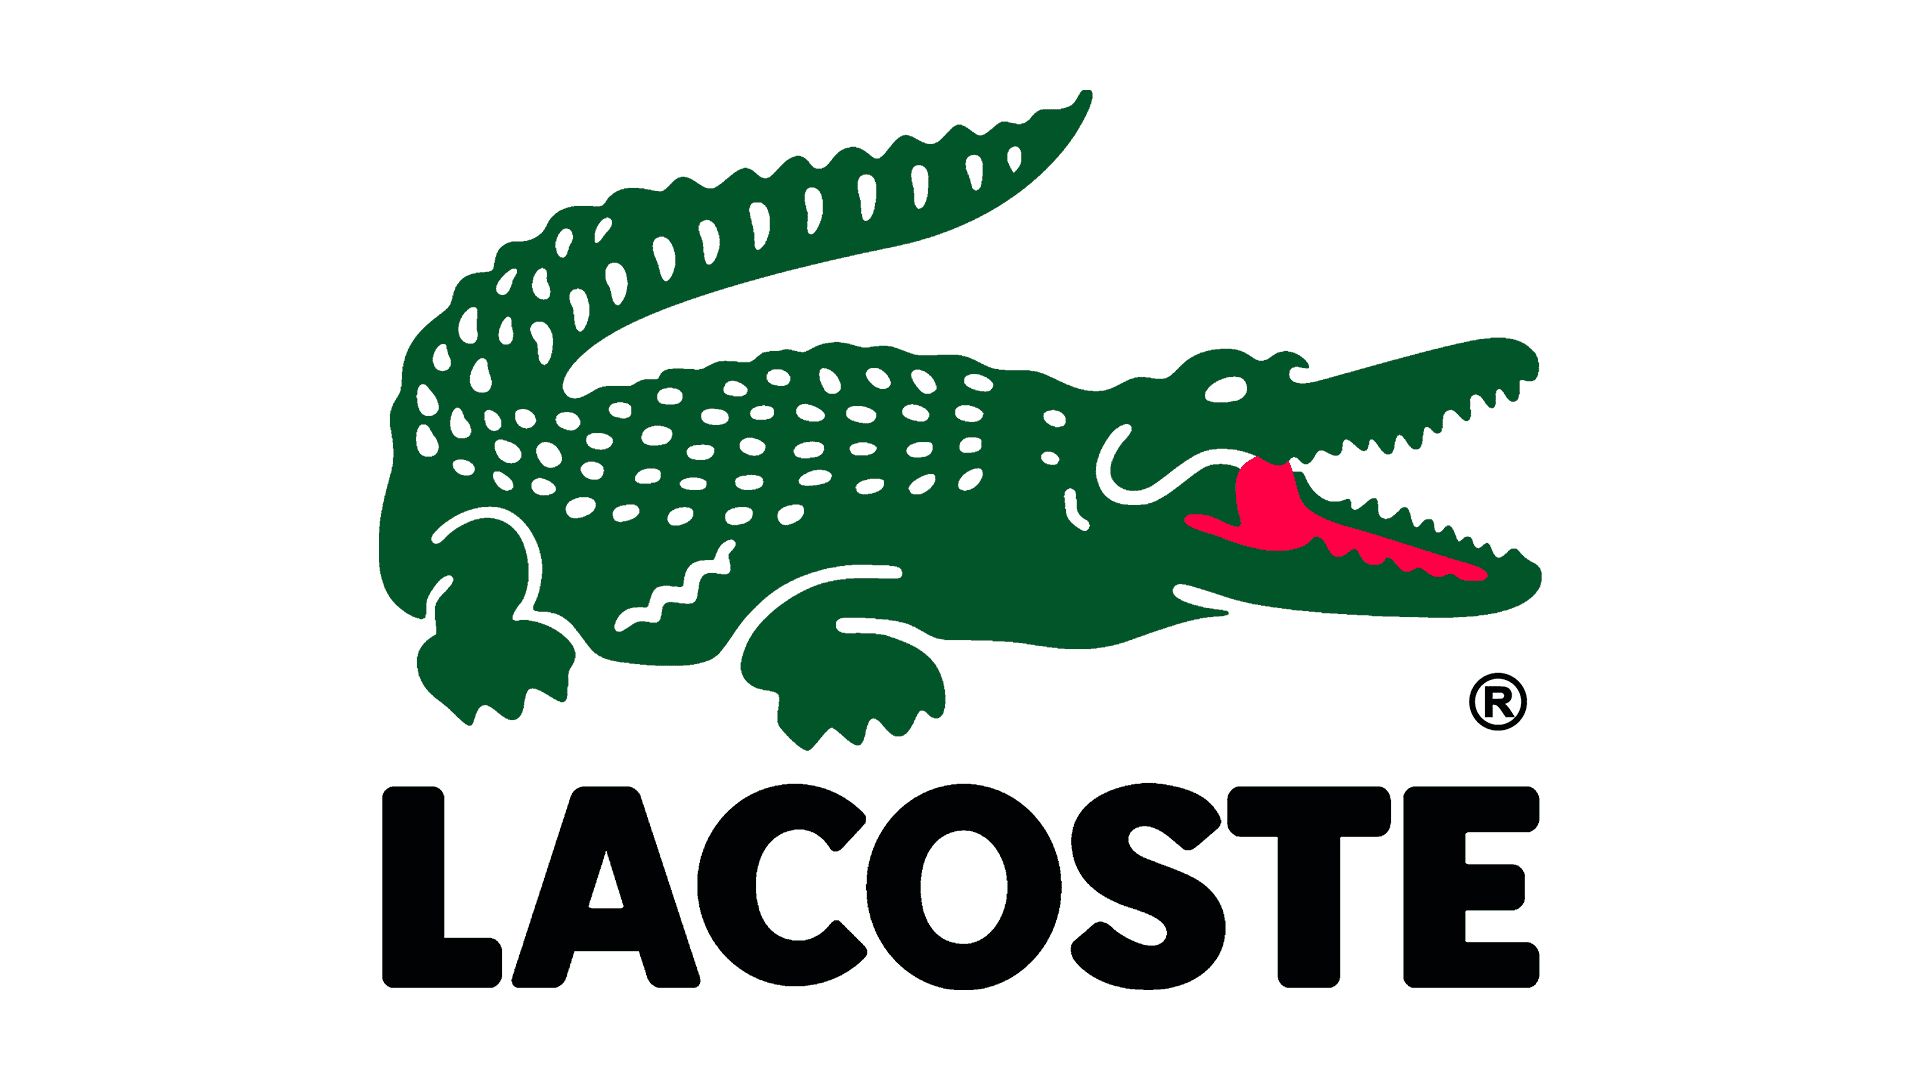 La coste. Lacoste бренд. Лакост лого. Бренд с крокодилом. Лакосте логотип оригинал.